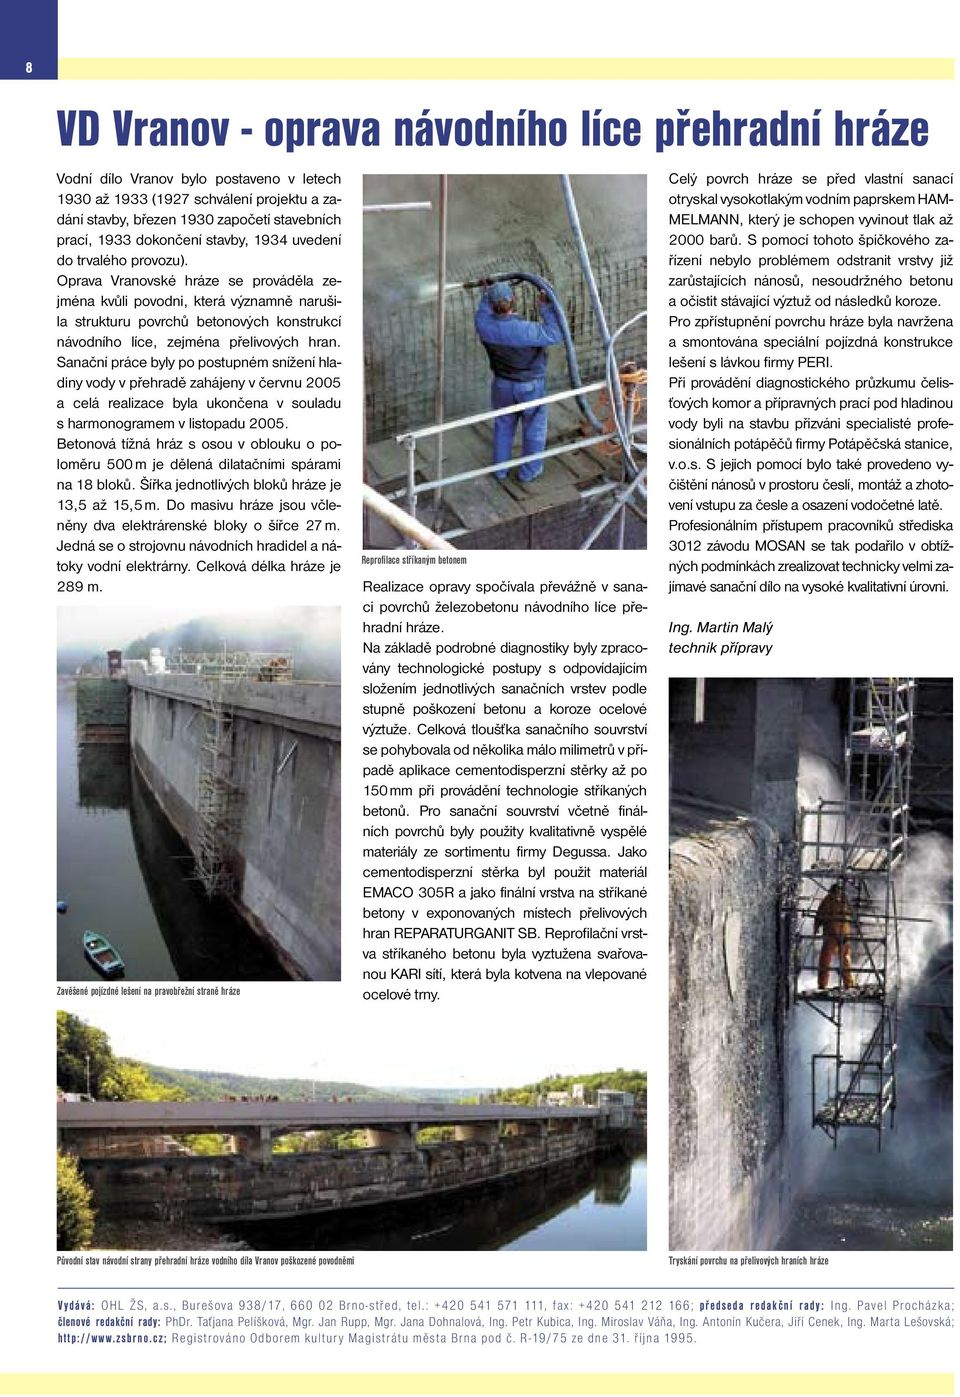 Oprava Vranovské hráze se prováděla zejména kvůli povodni, která významně narušila strukturu povrchů betonových konstrukcí návodního líce, zejména přelivových hran.